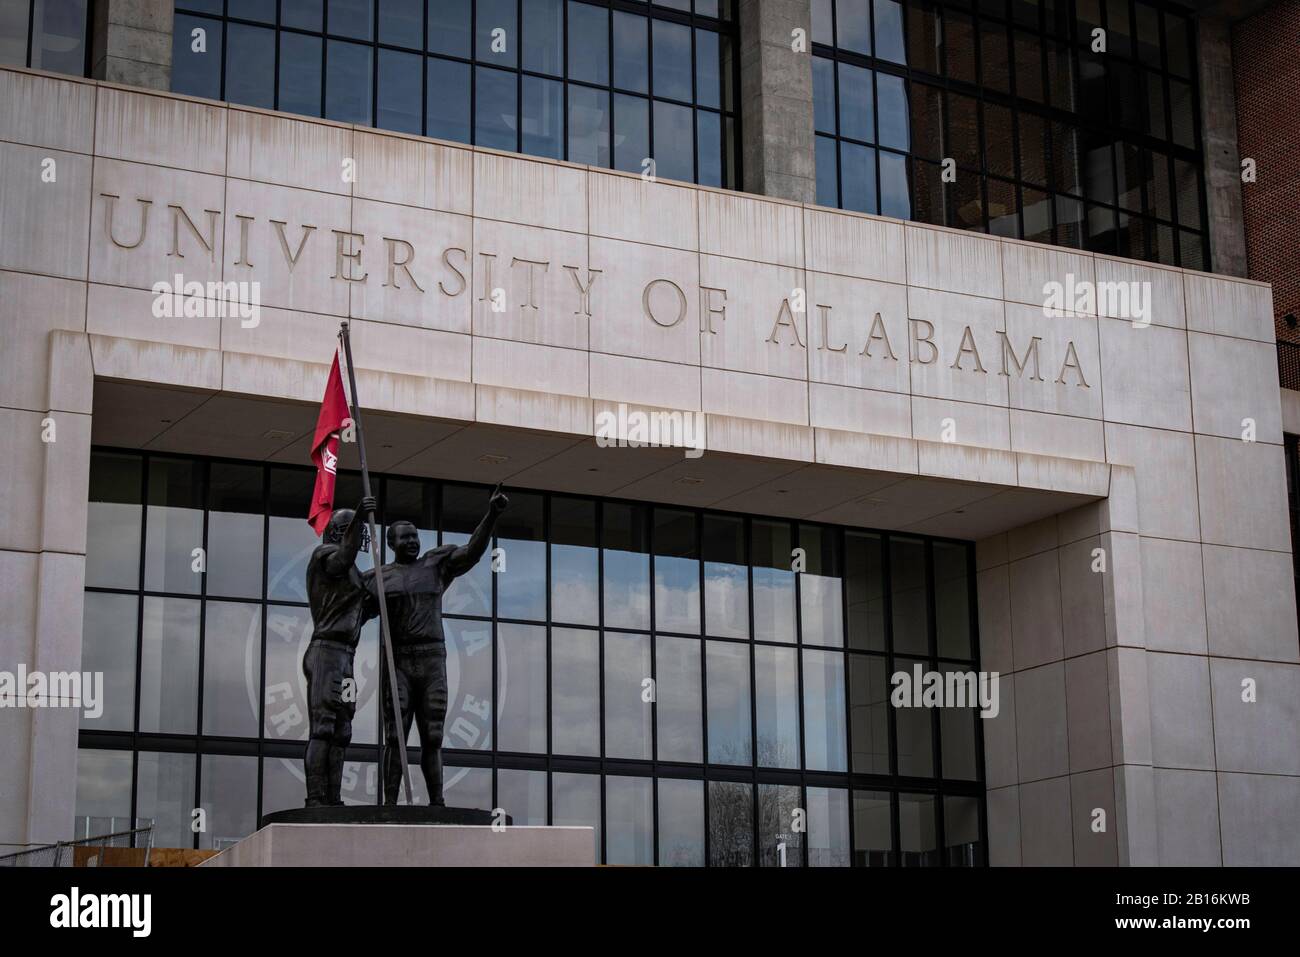 Tuscaloosa, Alabama - 8 février 2020 : campus universitaire de Crimson Tide de l'Université d'Alabama Banque D'Images